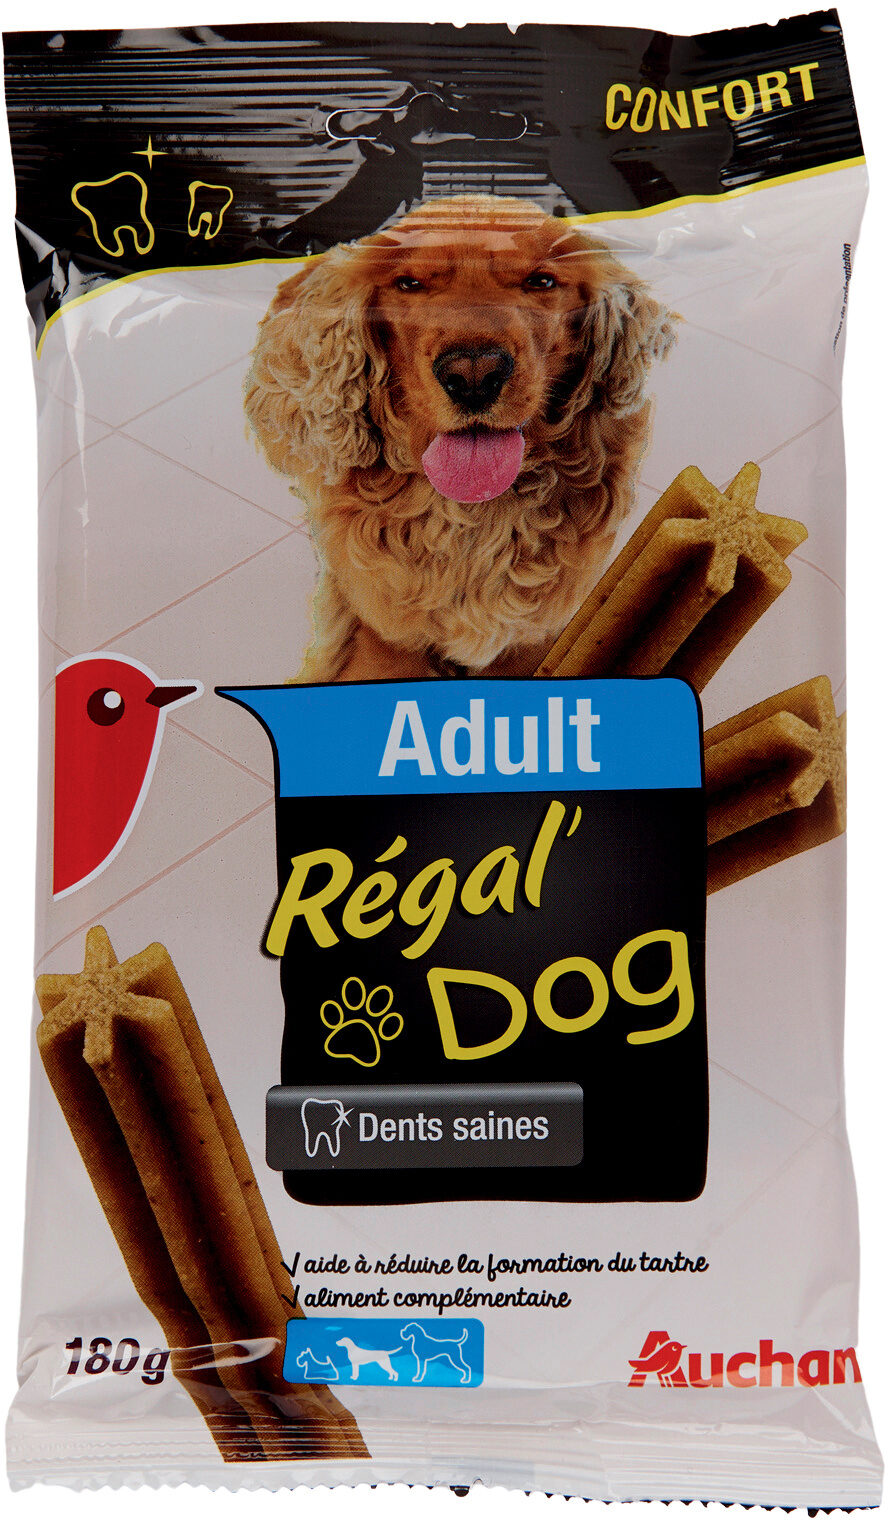 Auchan Adult Regal'Dog dents saines moyen chien - Product - fr